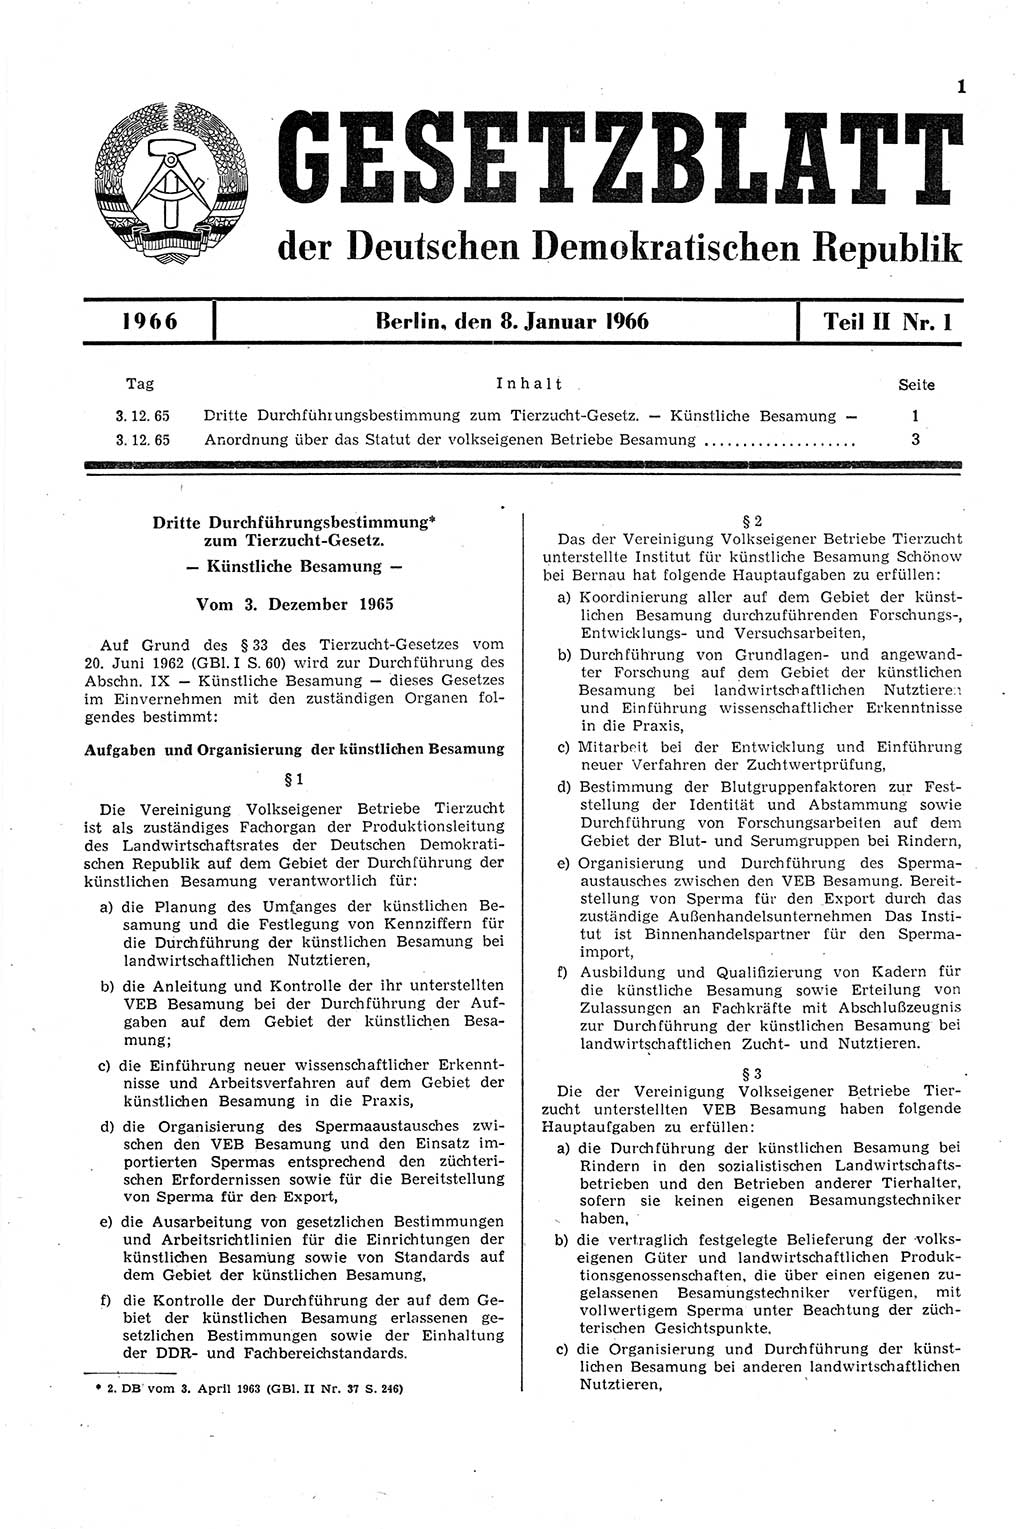 Gesetzblatt (GBl.) der Deutschen Demokratischen Republik (DDR) Teil ⅠⅠ 1966, Seite 1 (GBl. DDR ⅠⅠ 1966, S. 1)